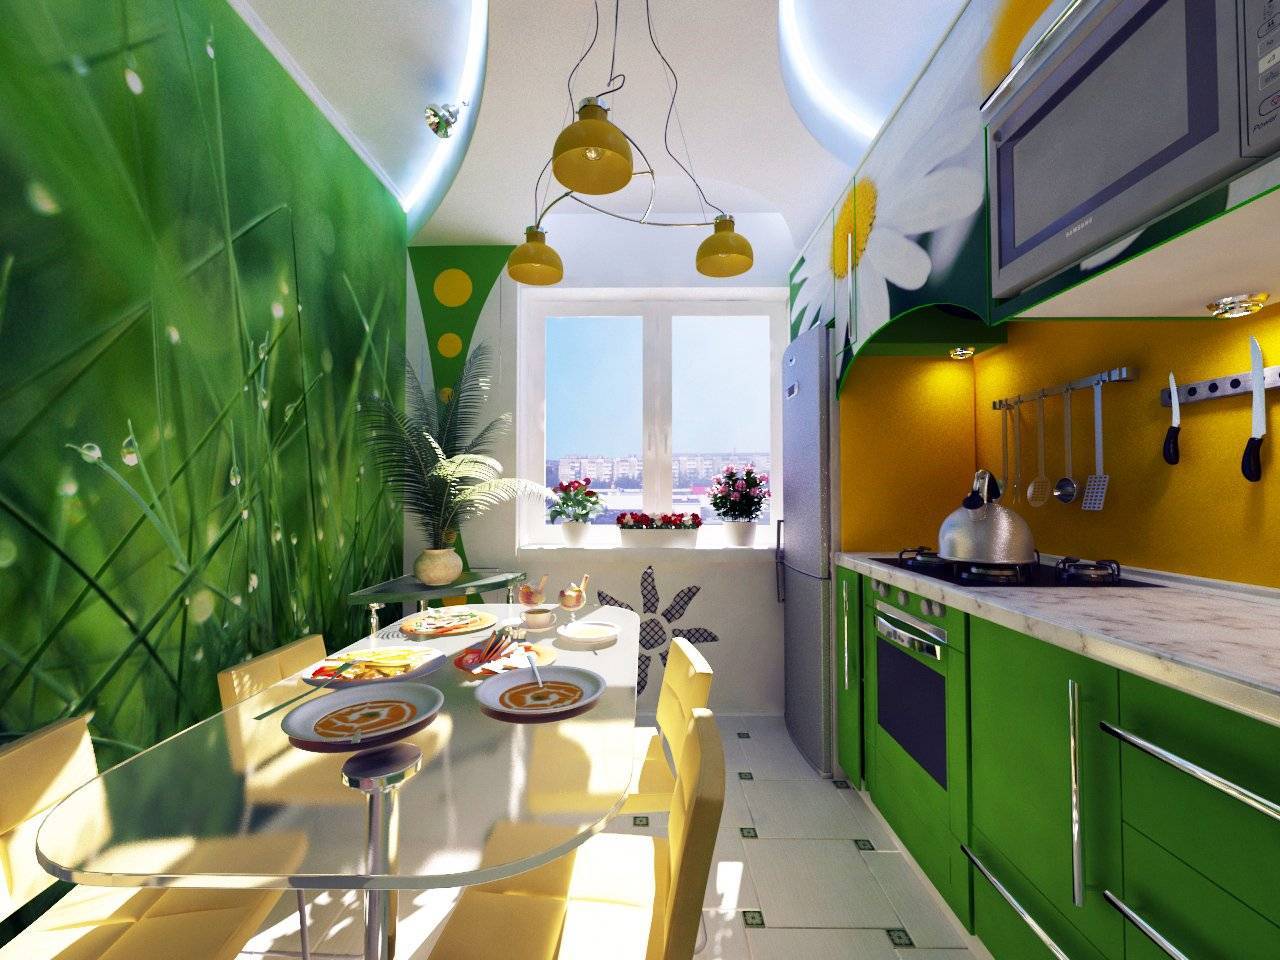 Желто зеленая кухня. Кухня в зеленых тонах. Красивая яркая кухня. Кухня зеленого цвета в интерьере. Кухня в салатовых тонах.